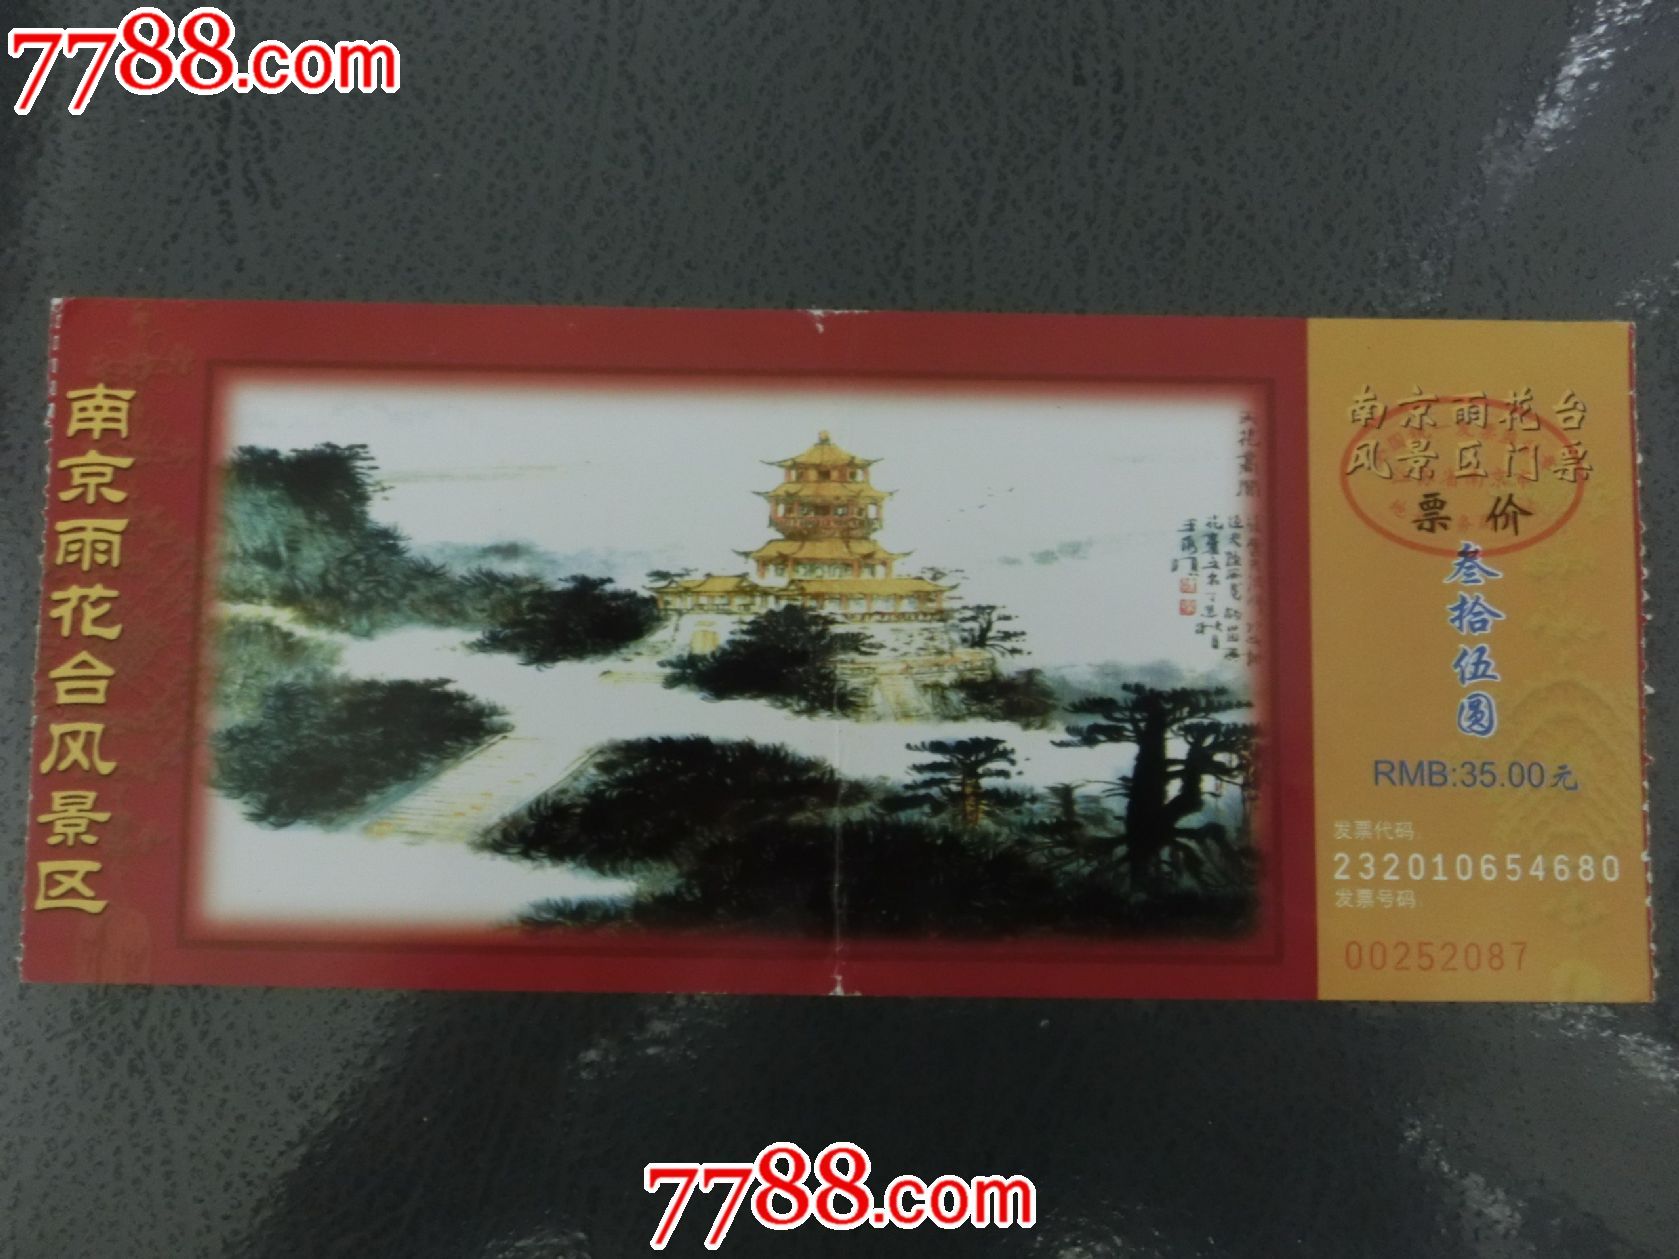 南京雨花台风景区门票-价格:3元-se16600891-